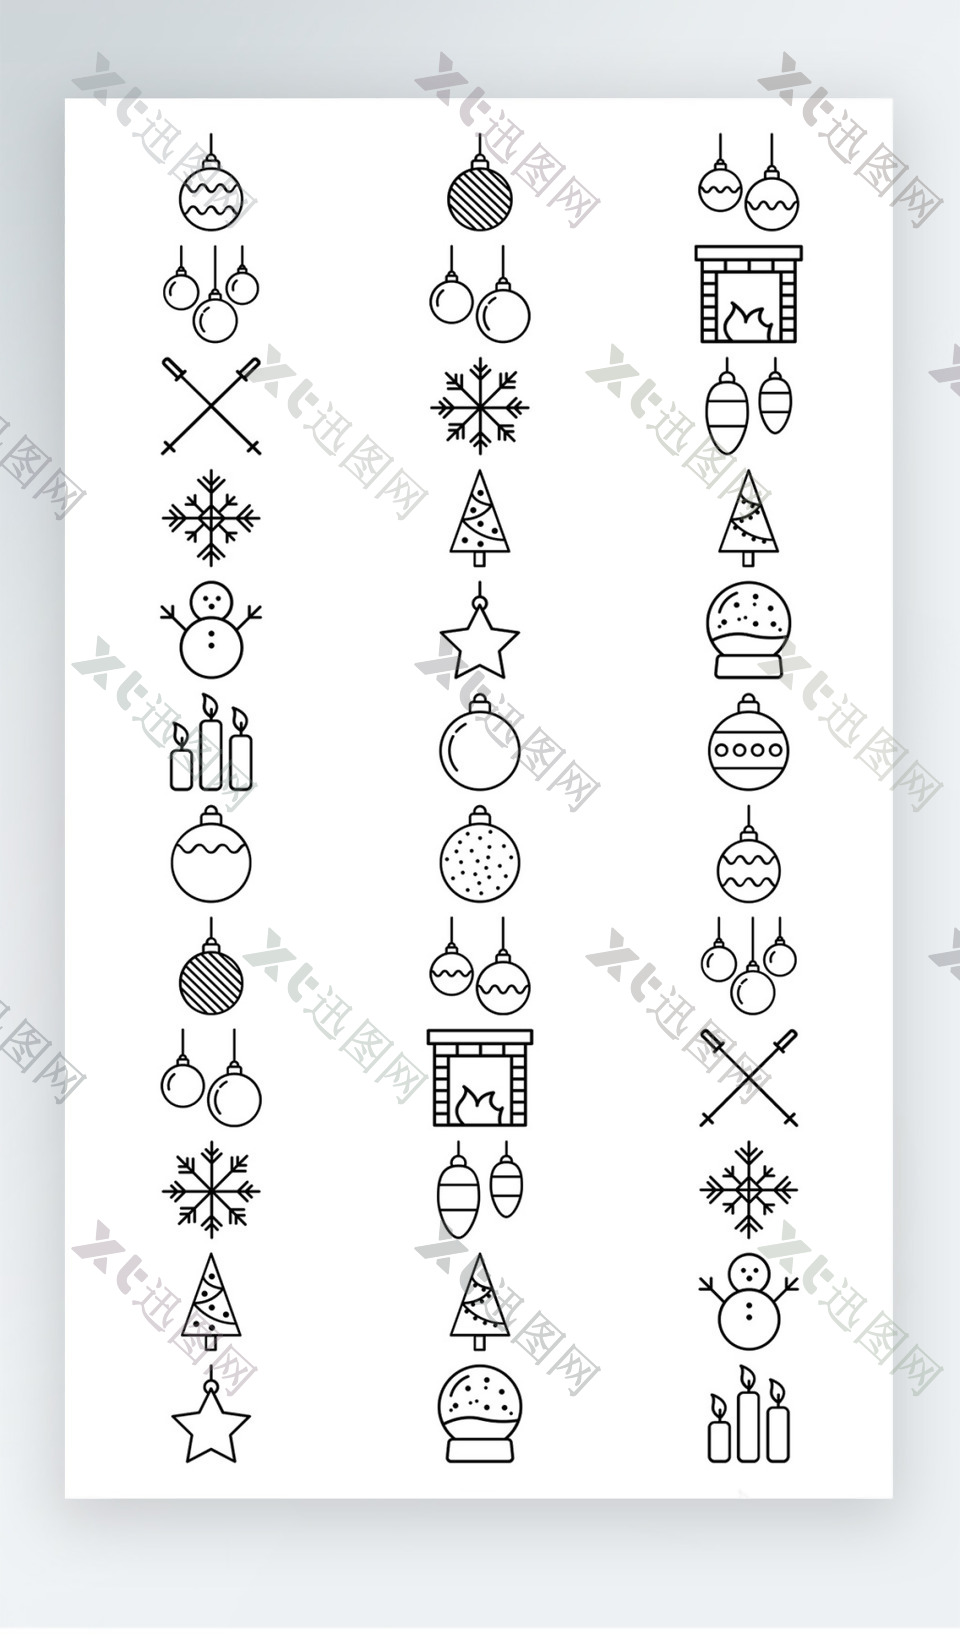 圣诞节雪人图标黑白线稿素材AI